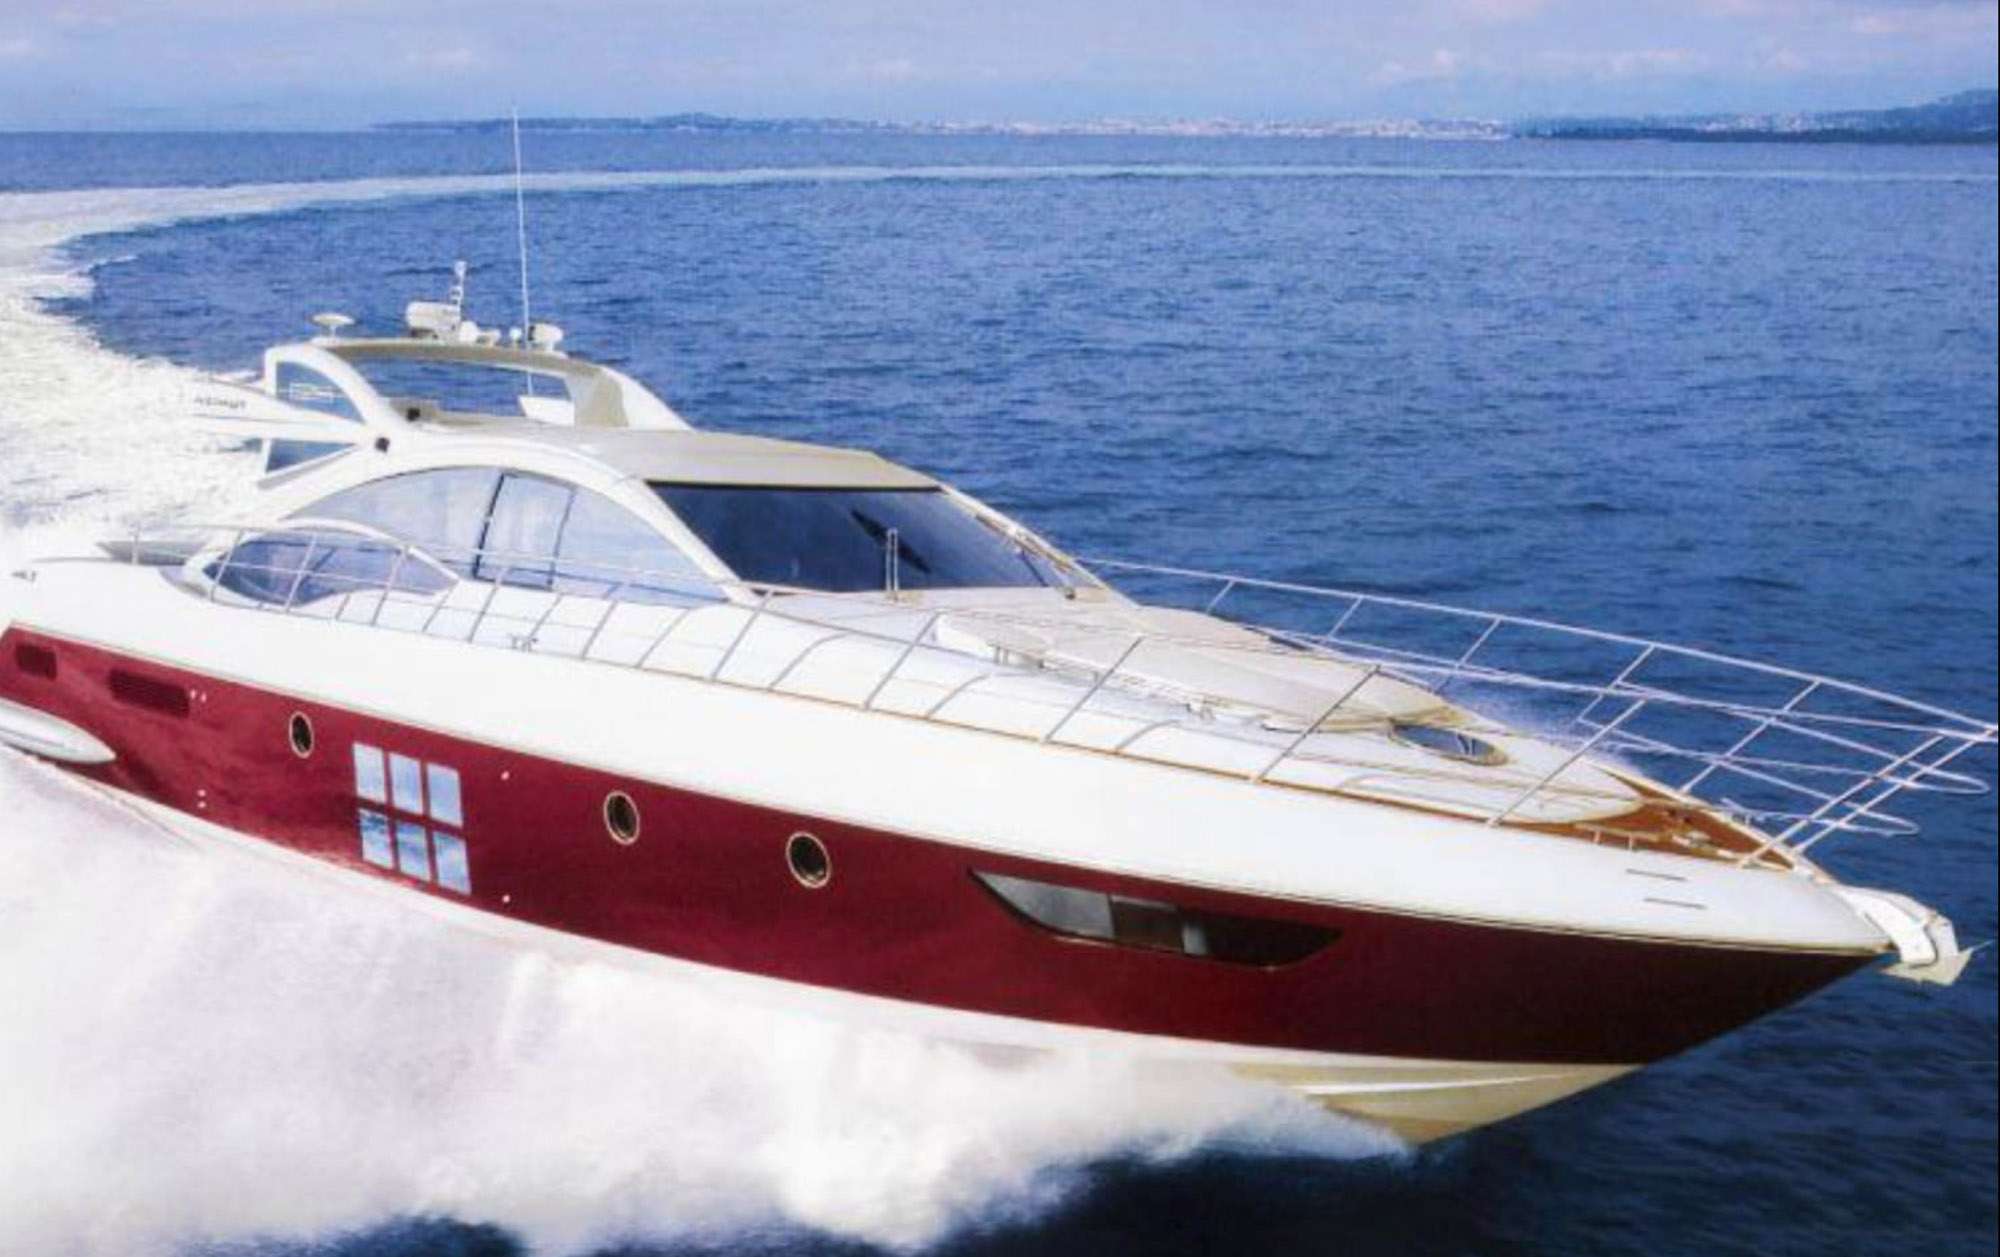 Warren Kelly Yacht Charter - Ritzy Charters